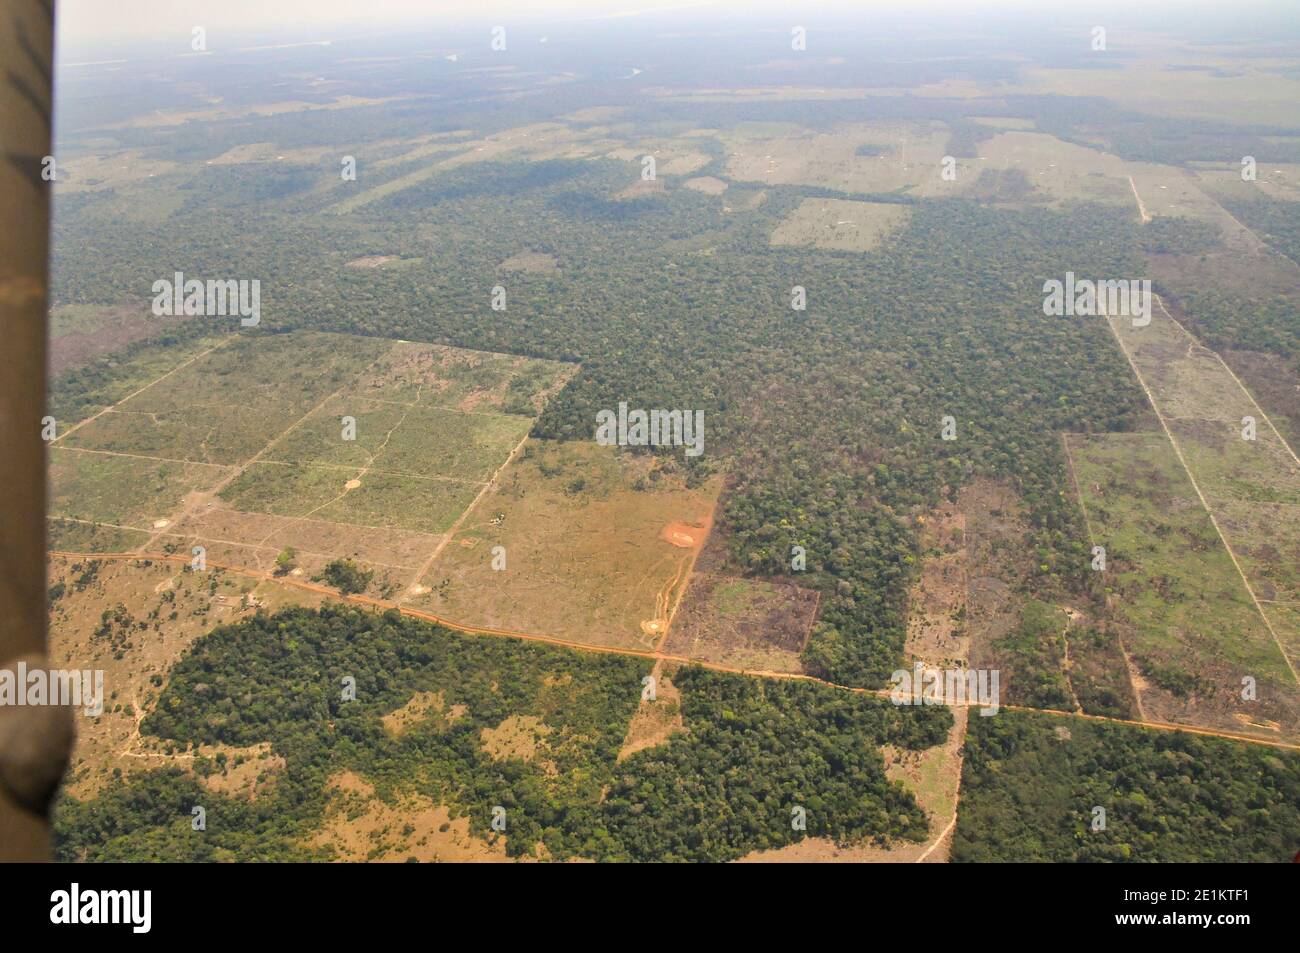 Vue aérienne de la forêt tropicale amazonienne brésilienne montrant les zones de déforestation Banque D'Images